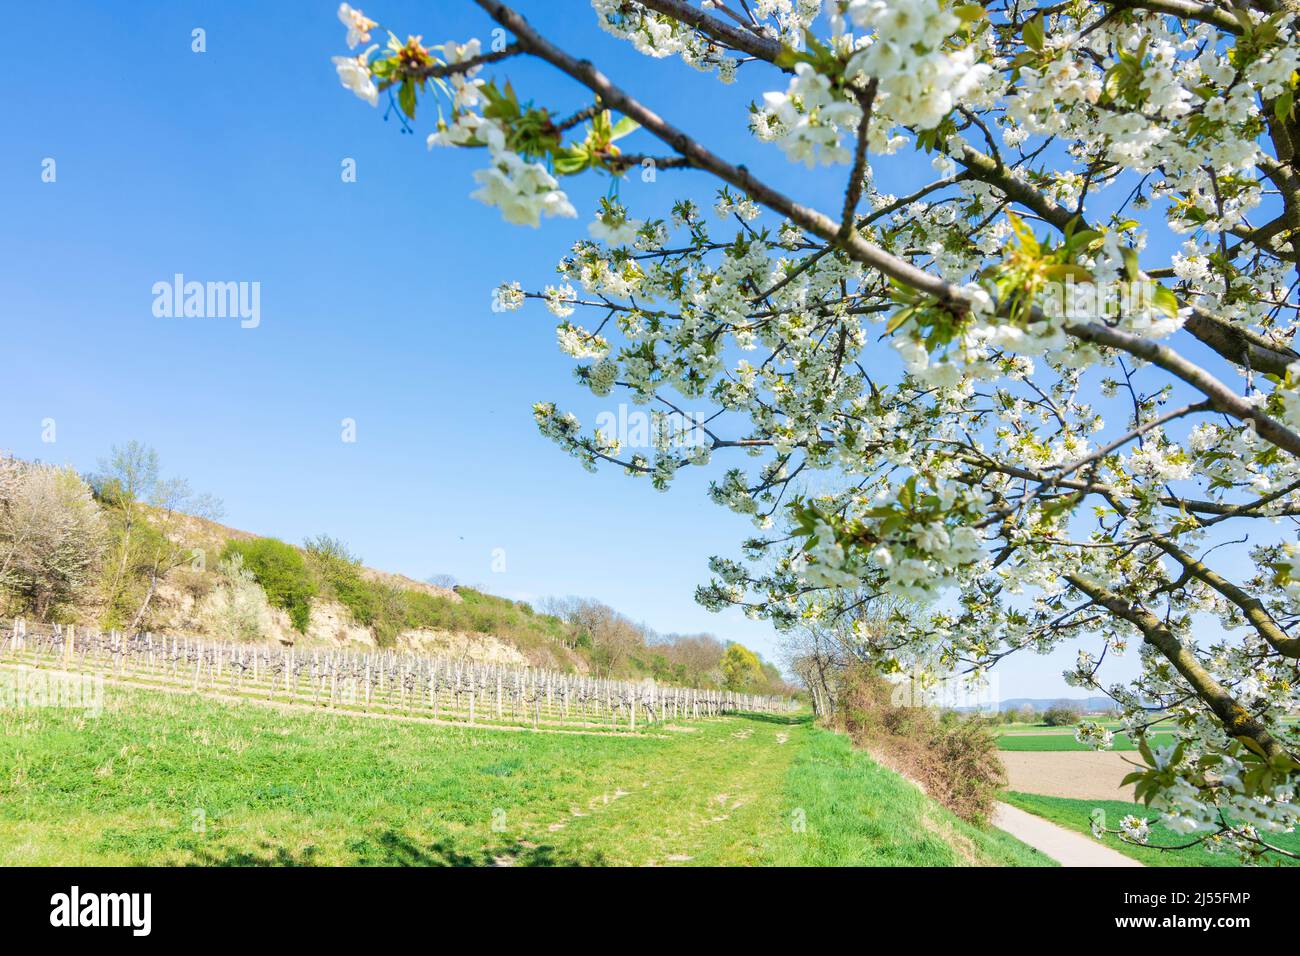 Hausleiten: fruit trees blossom, ridge Wagram in Donau, Niederösterreich, Lower Austria, Austria Stock Photo